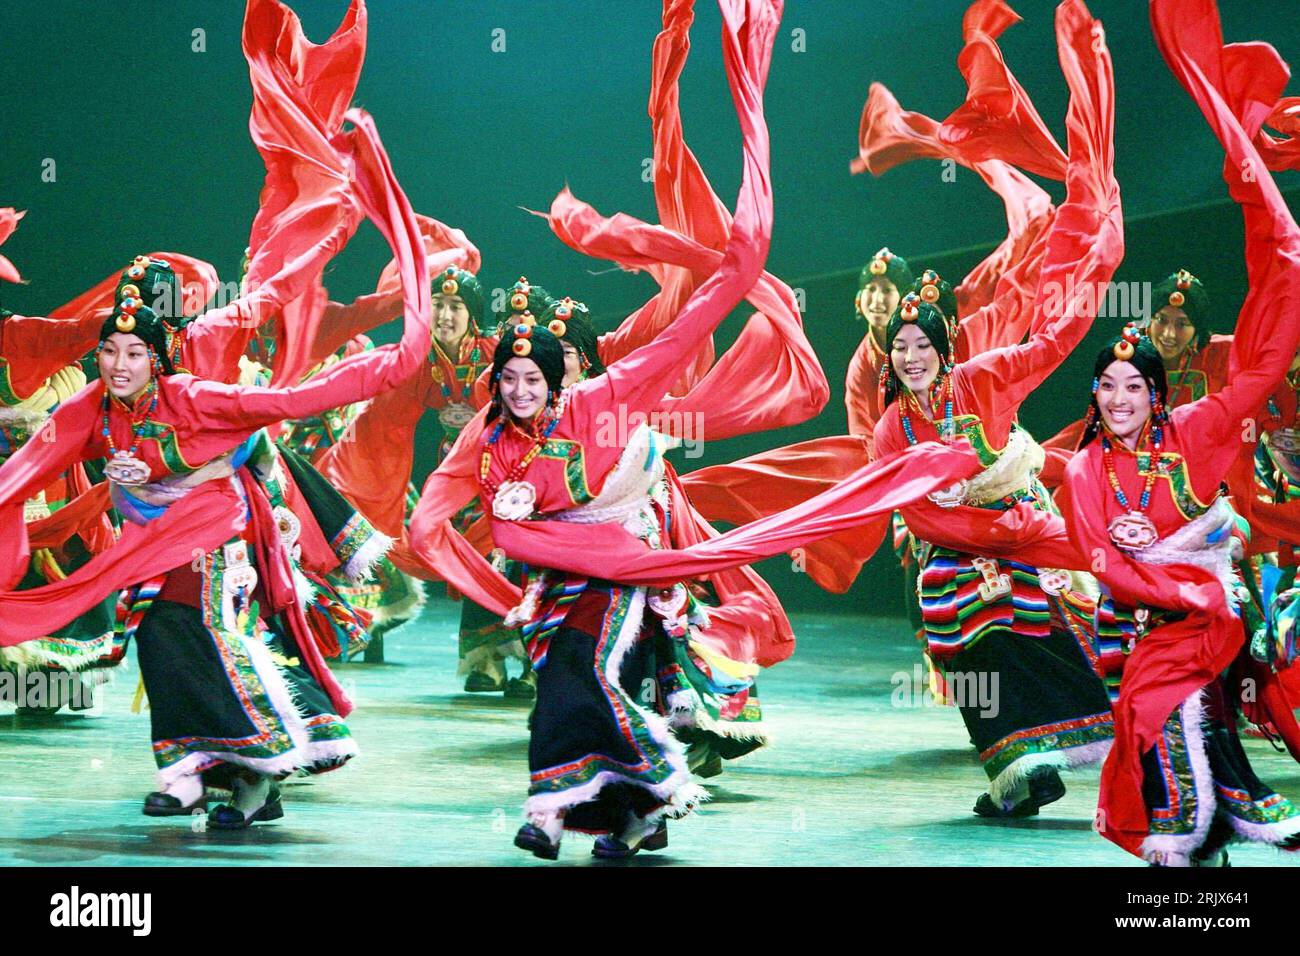 Bildnummer: 52159941 Datum: 07.10.2007 Copyright: imago/Xinhua Tibetanische Tänzerinnen während der Aufführung der tibetanischen Volkstanz-Show - das tibetanische Rätsel - in Suzhou, China PUBLICATIONxNOTxINxCHN, Personen; 2007, Suzhou, Schauspieler, Tibetaner, tanzen, Tanzt, Show, Volkstanz, tibetisches Rätsel, Tänzer; , quer, Kbdig, Gruppenbild, Tanz, Kunst, China, Aktion, Stockfoto